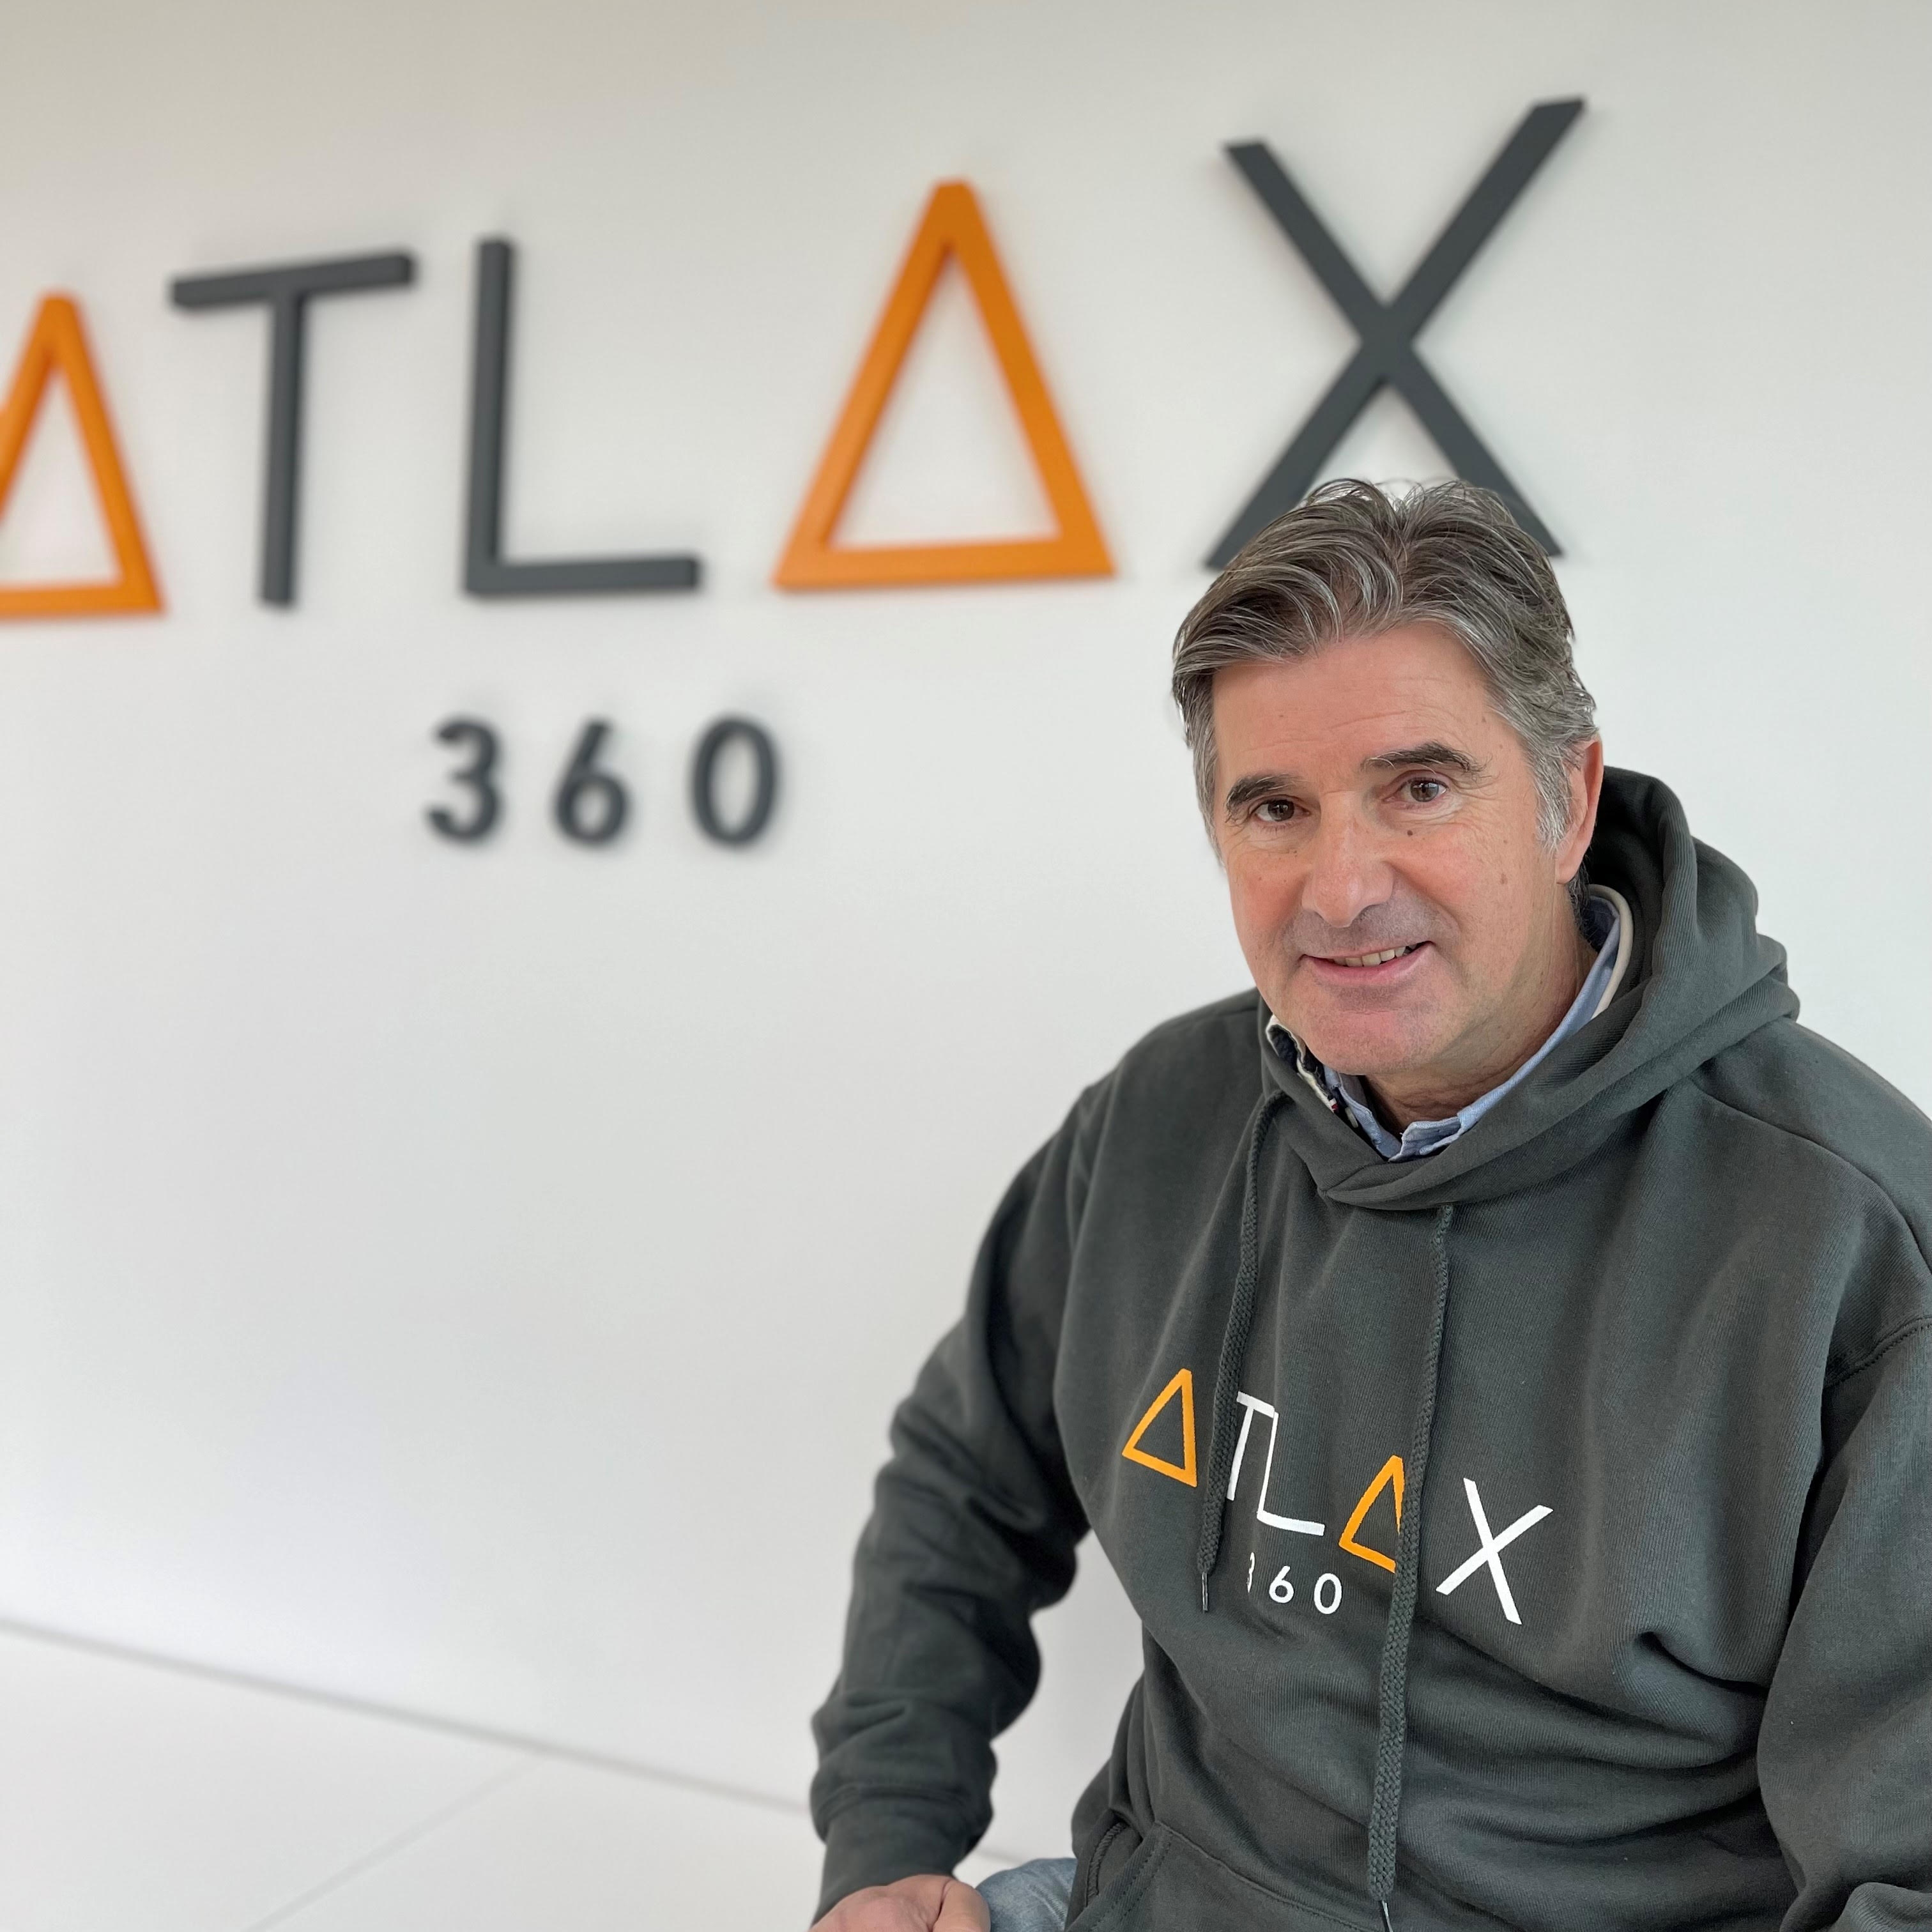 Santiago Martin, CEO Atlax 360